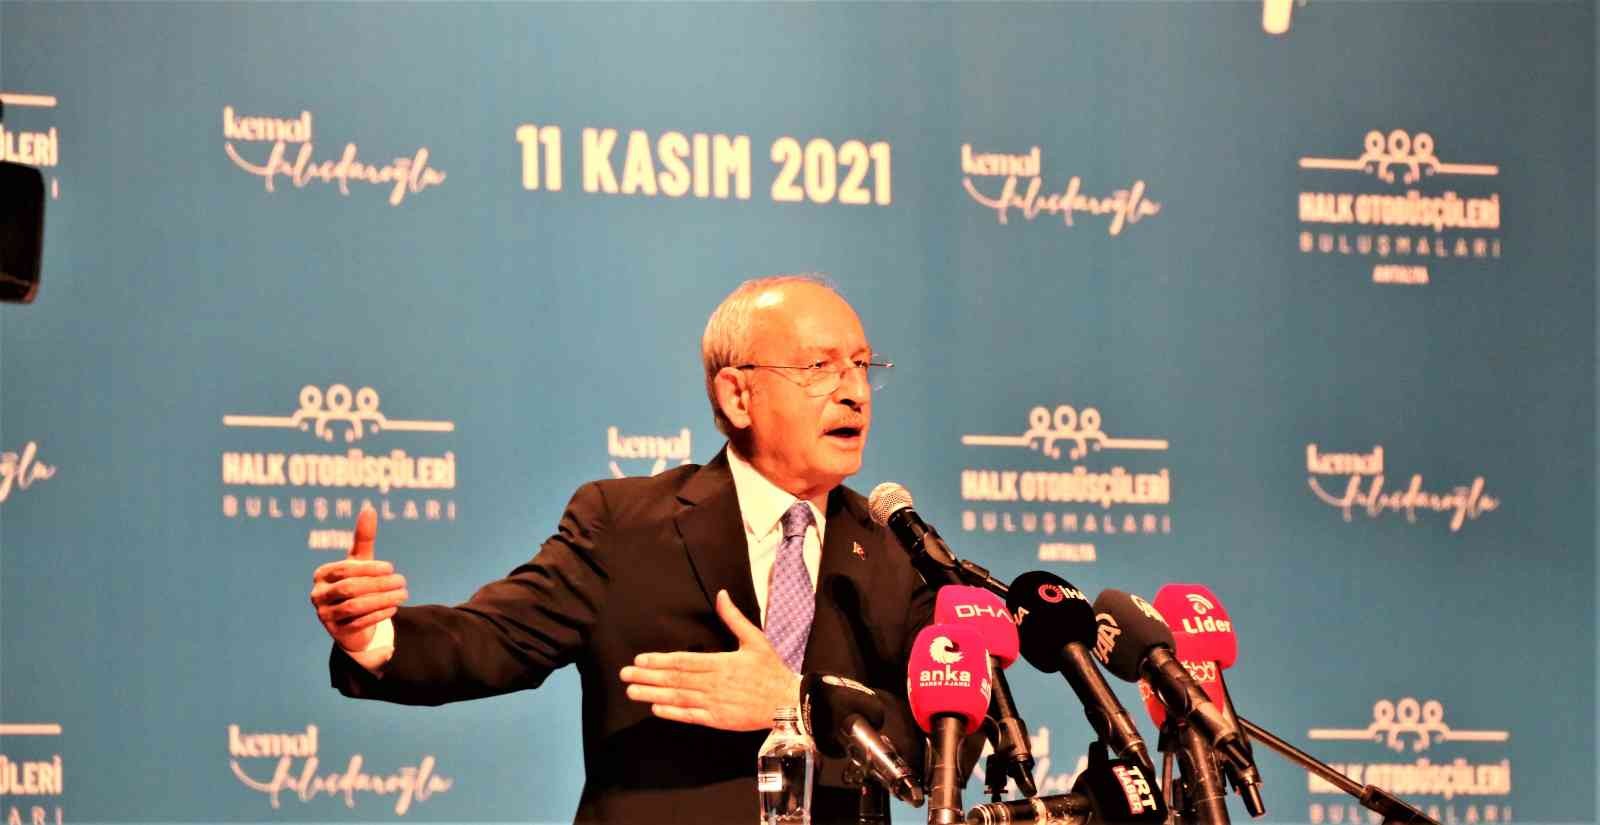 Kılıçdaroğlu: “Taşıt alım vergisini ve motorlu taşıtlar vergisini belediyelere devredeceğim”